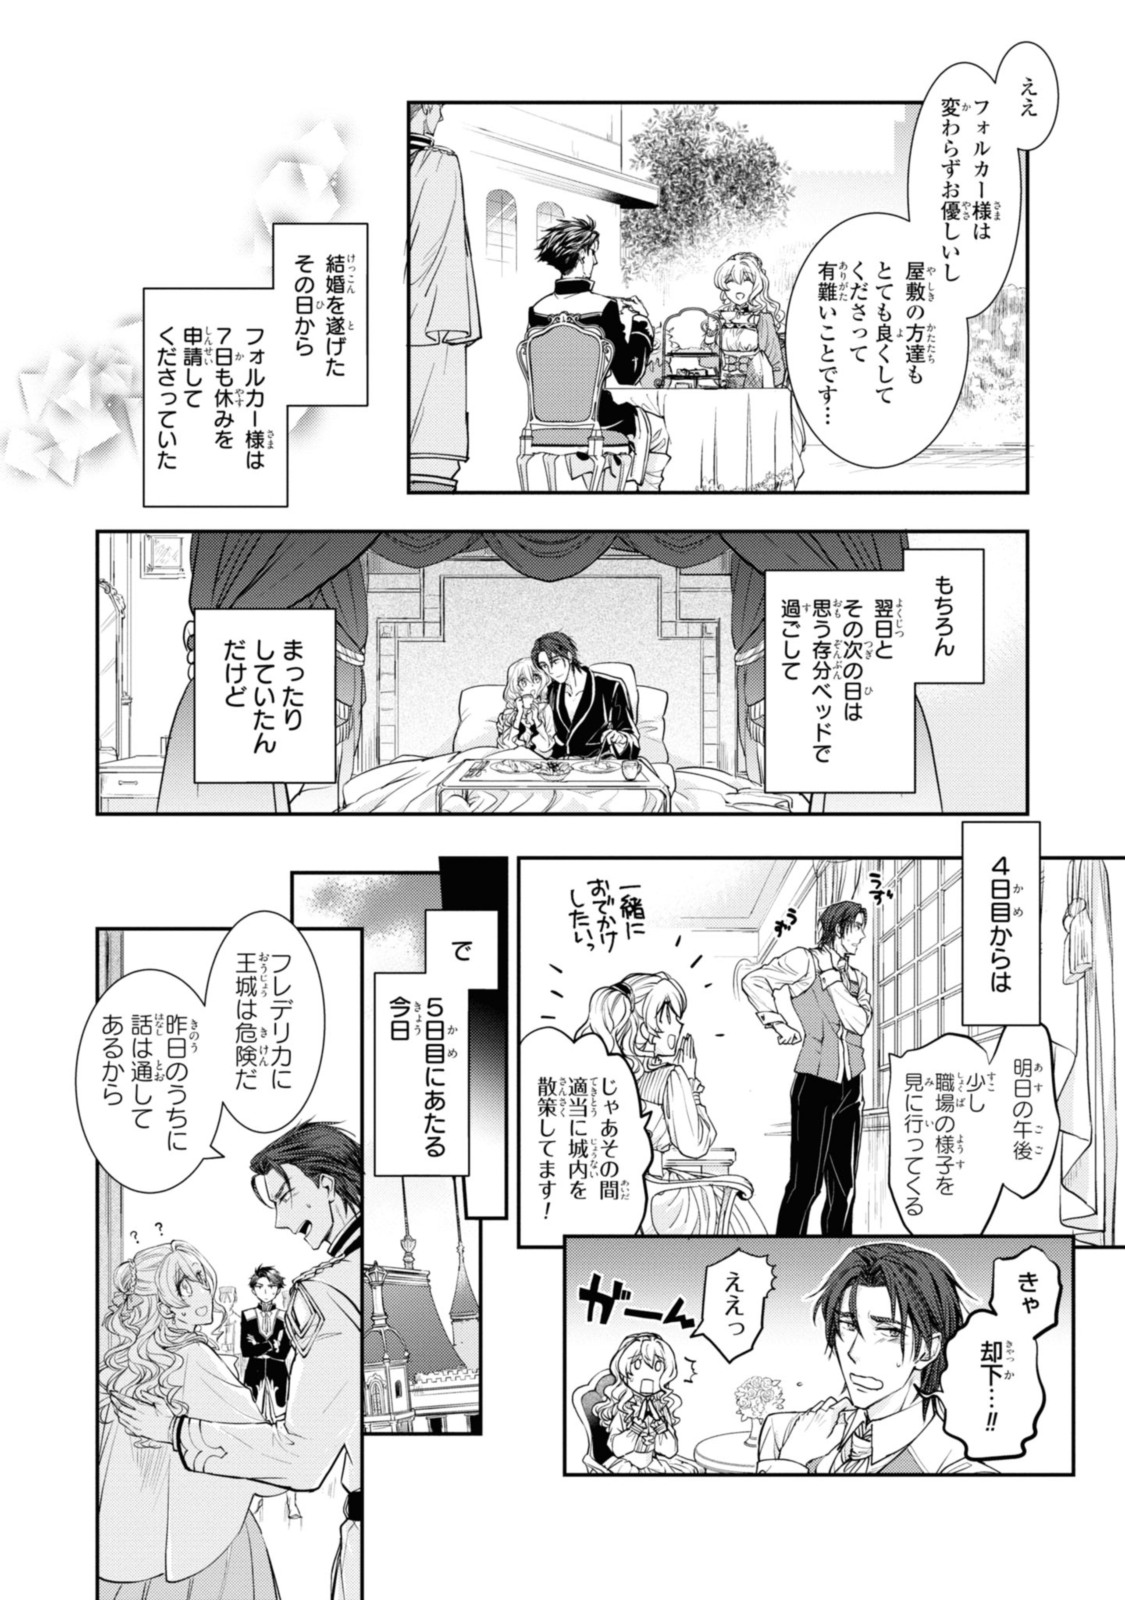 Sakkon no Cinderella wa Kutsu wo Otosanai. - Chapter 11.1 - Page 2